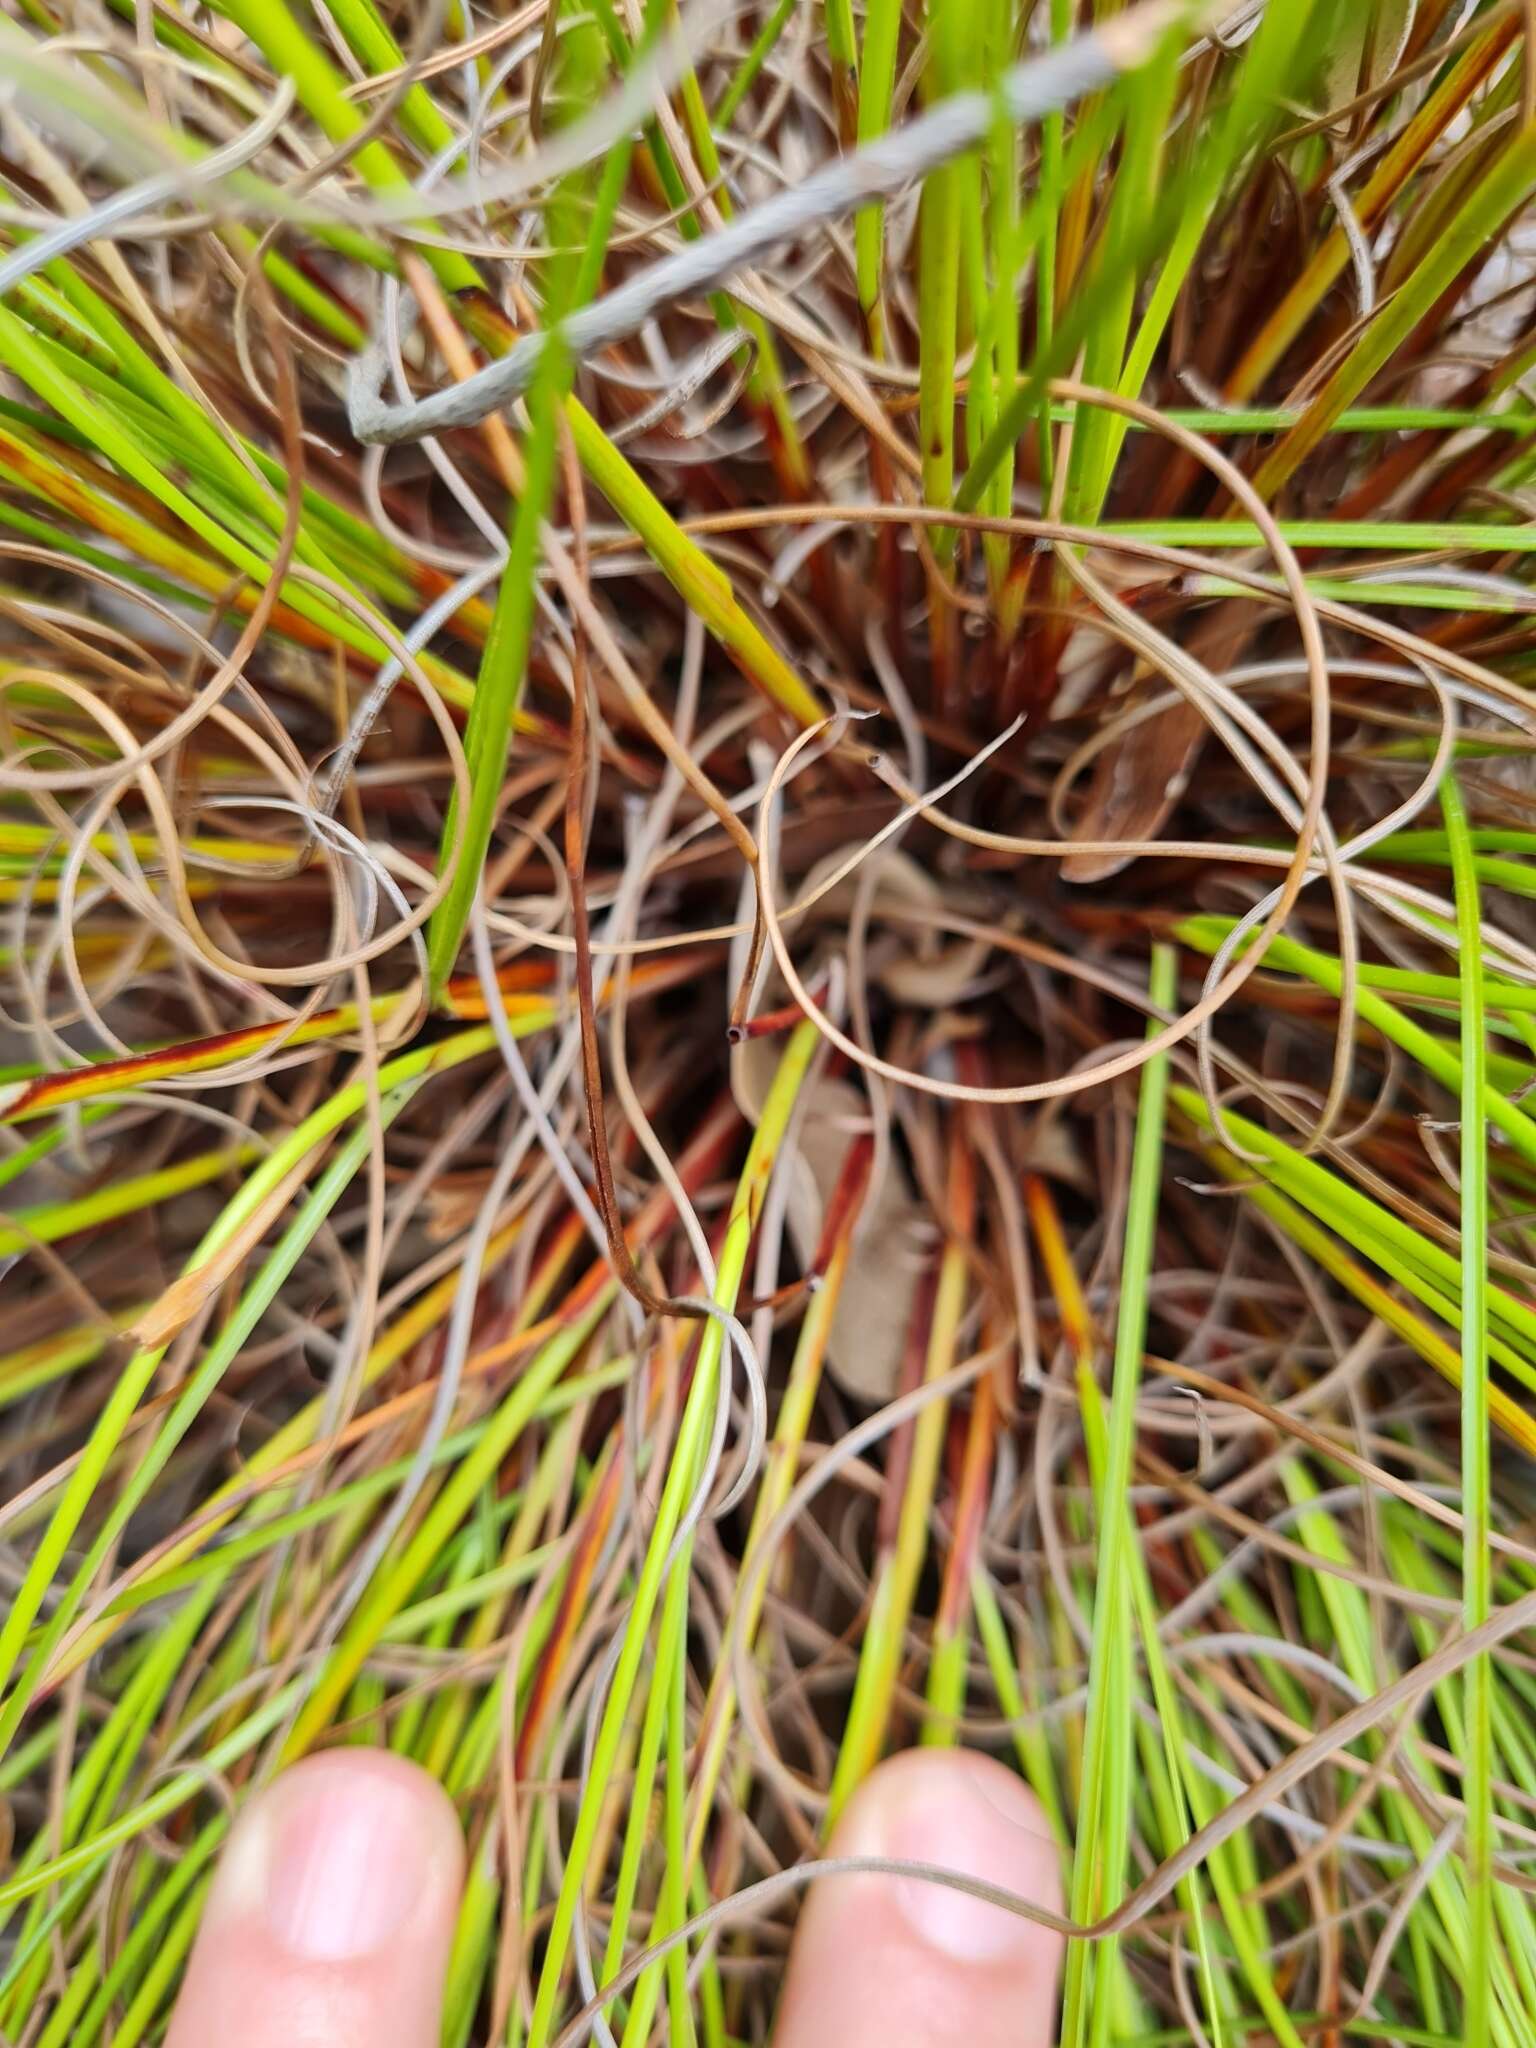 Tetraria cuspidata (Rottb.) C. B. Clarke的圖片